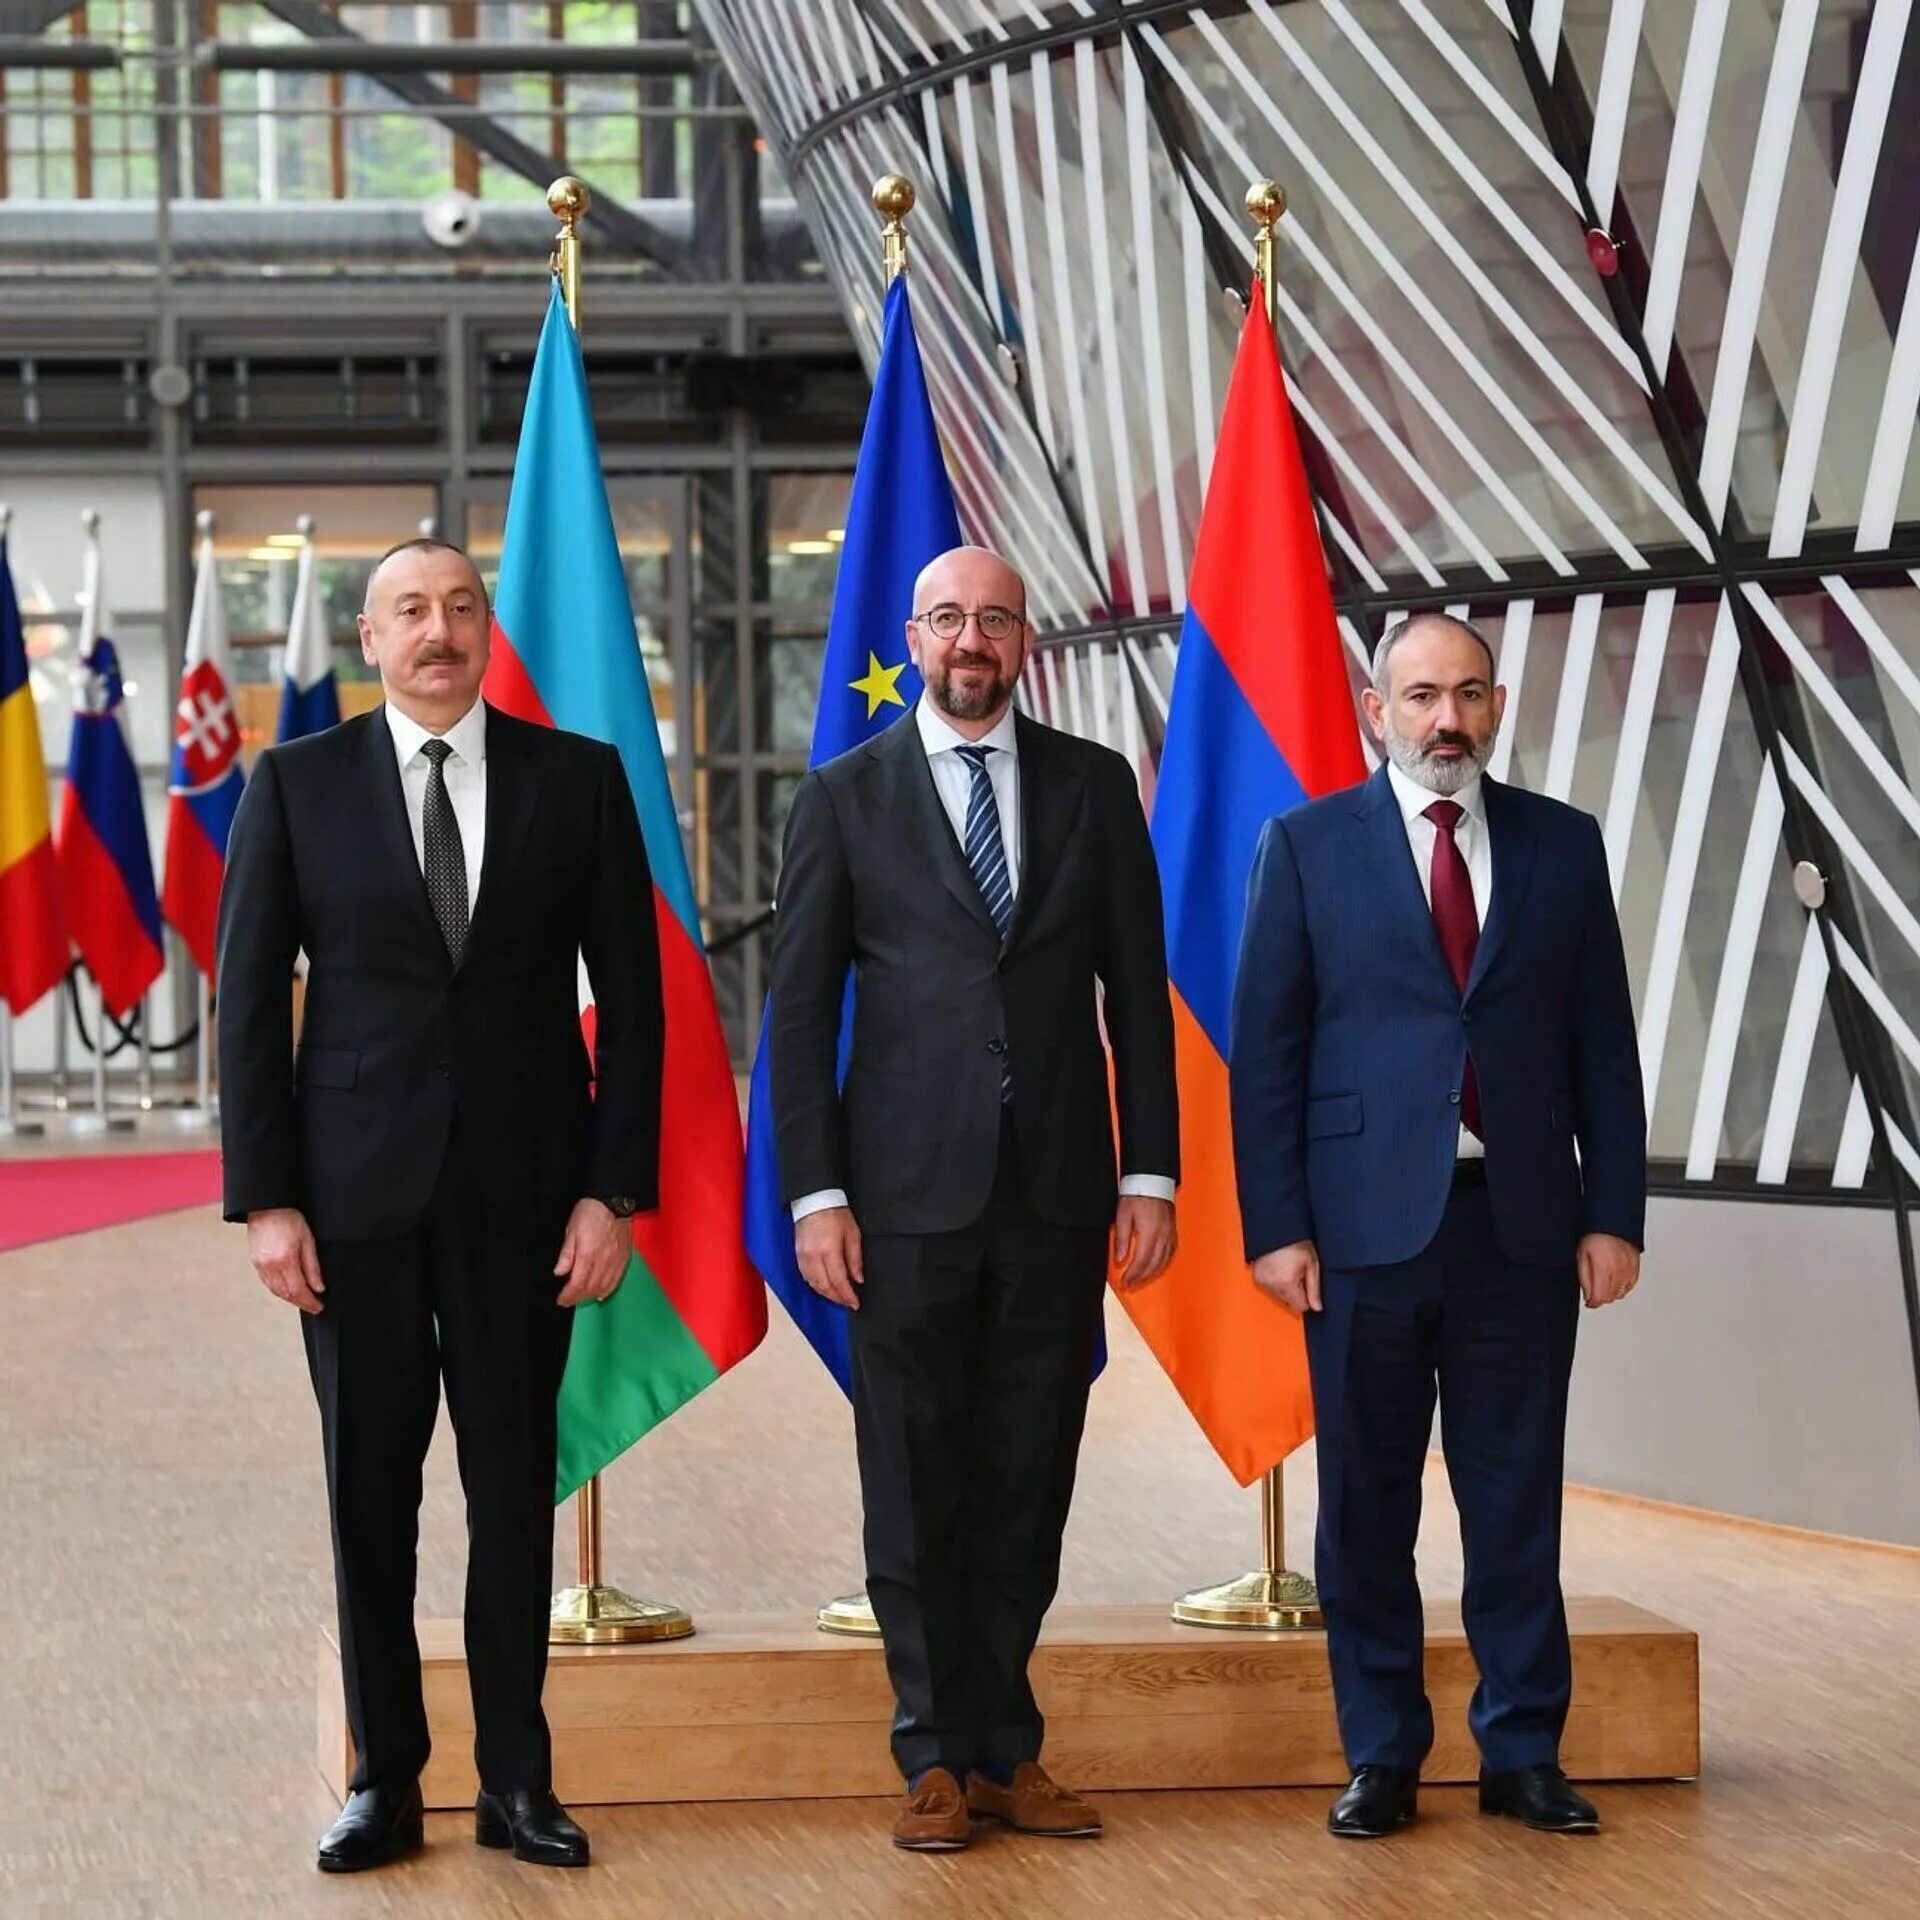 Встреча Алиева и Пашиняна в Брюсселе. Пашинян и Алиев встреча. Трехсторонние переговоры